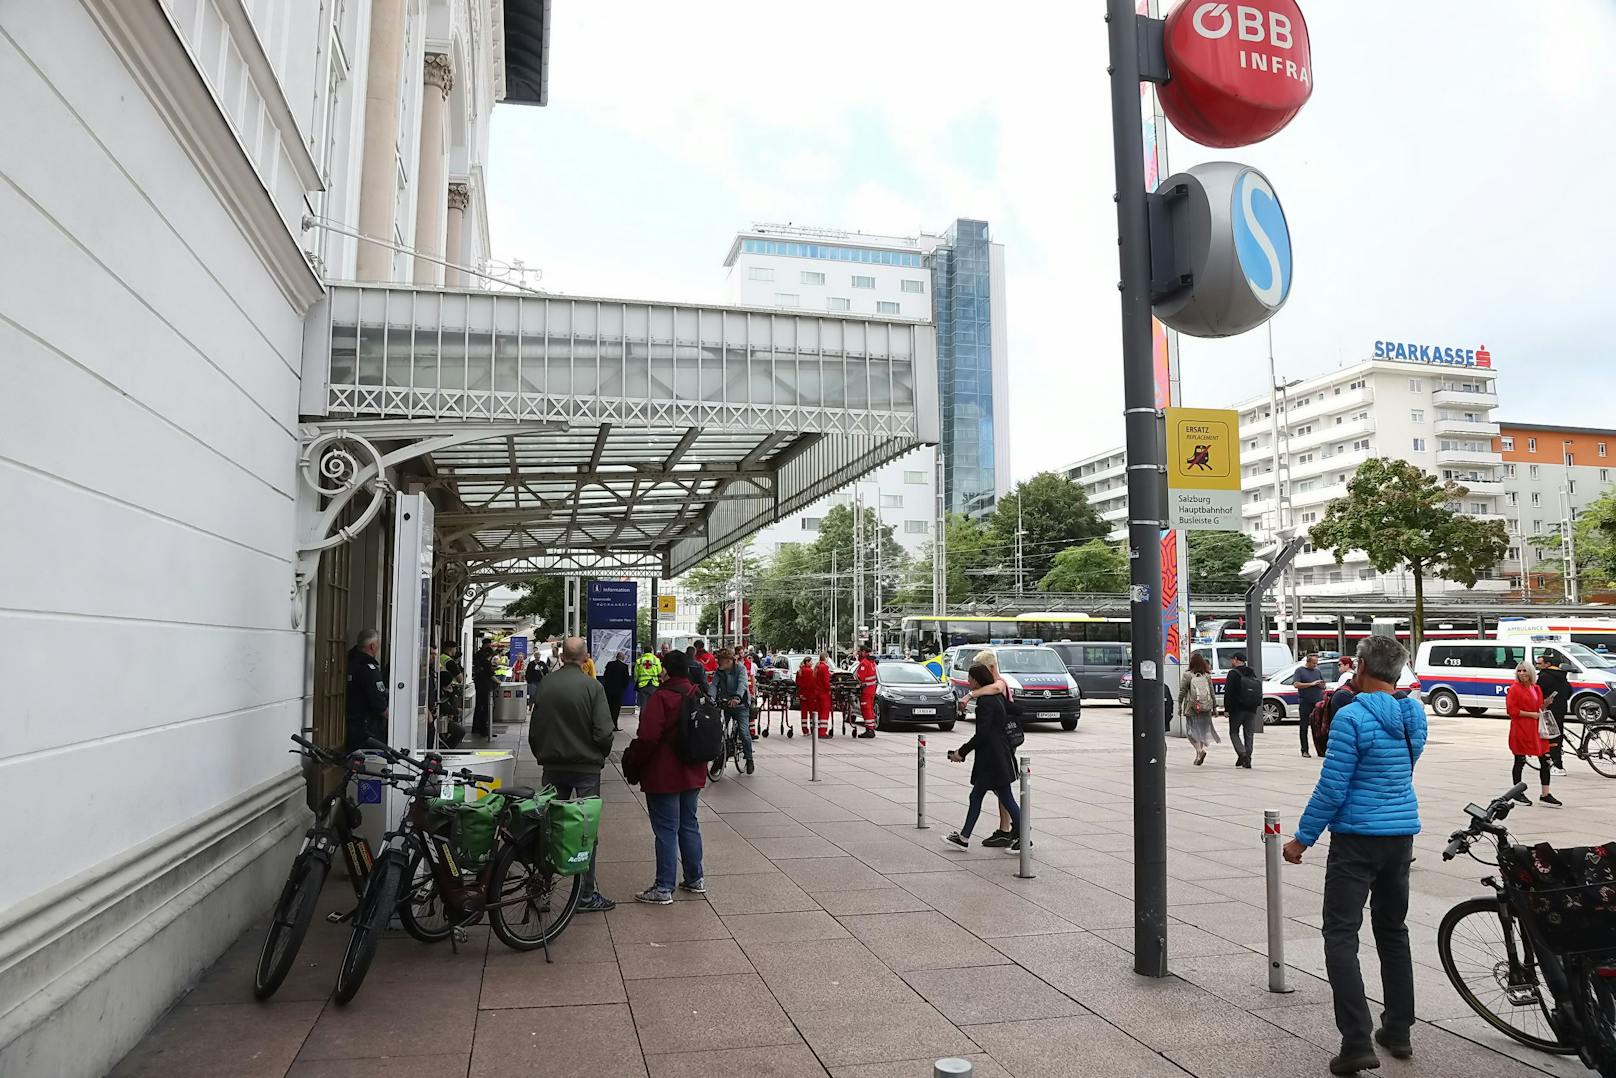 Zu einem Großaufgebot der Einsatzkräfte kam es am Donnerstag am Hauptbahnhof in Salzburg. Ein herrenloser Koffer wurde am Bahnsteig der Lokalbahn aufgefunden und Bombenalarm ausgelöst.